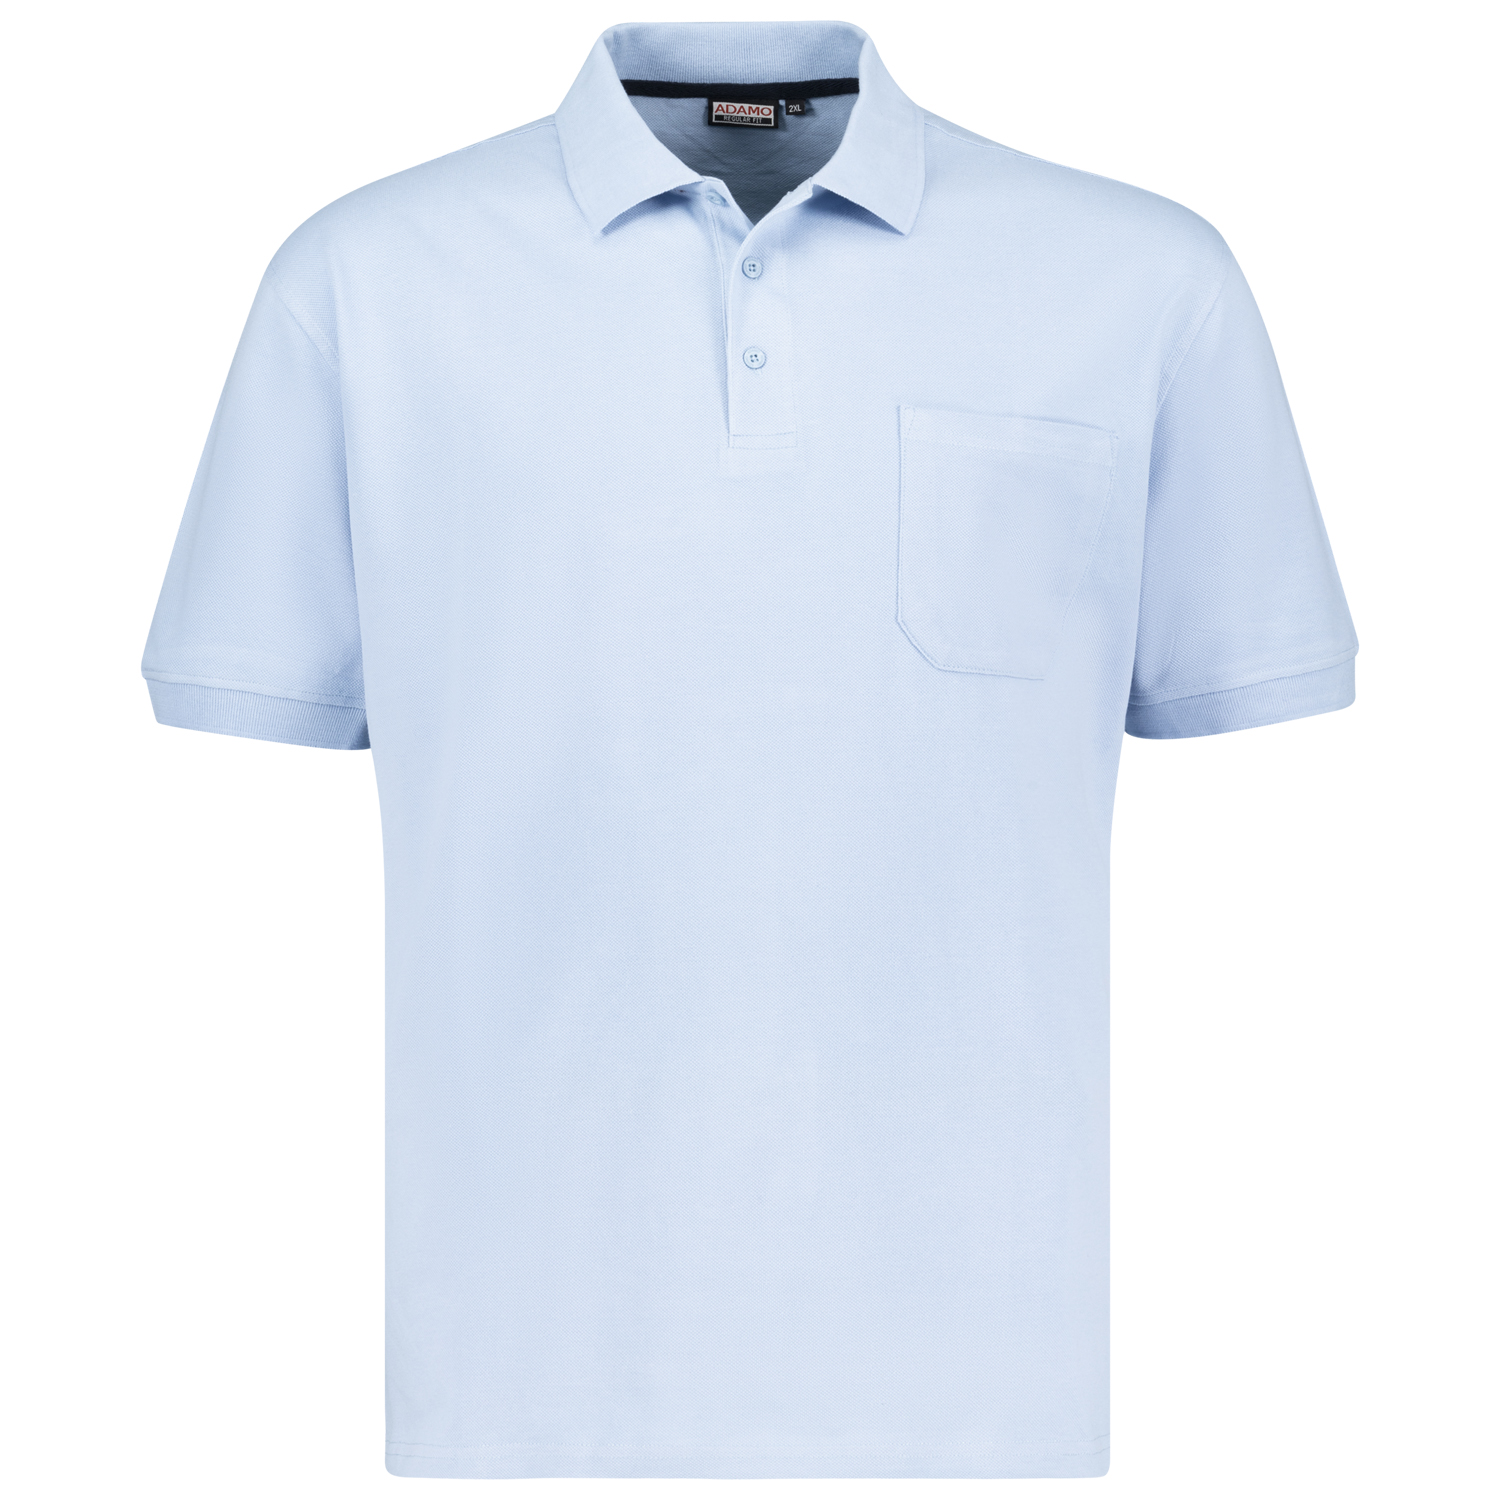 Hellblaues Kurzarm Polo Shirt KENO von ADAMO in Pique Qualität für Herren in großen Größen bis 10XL